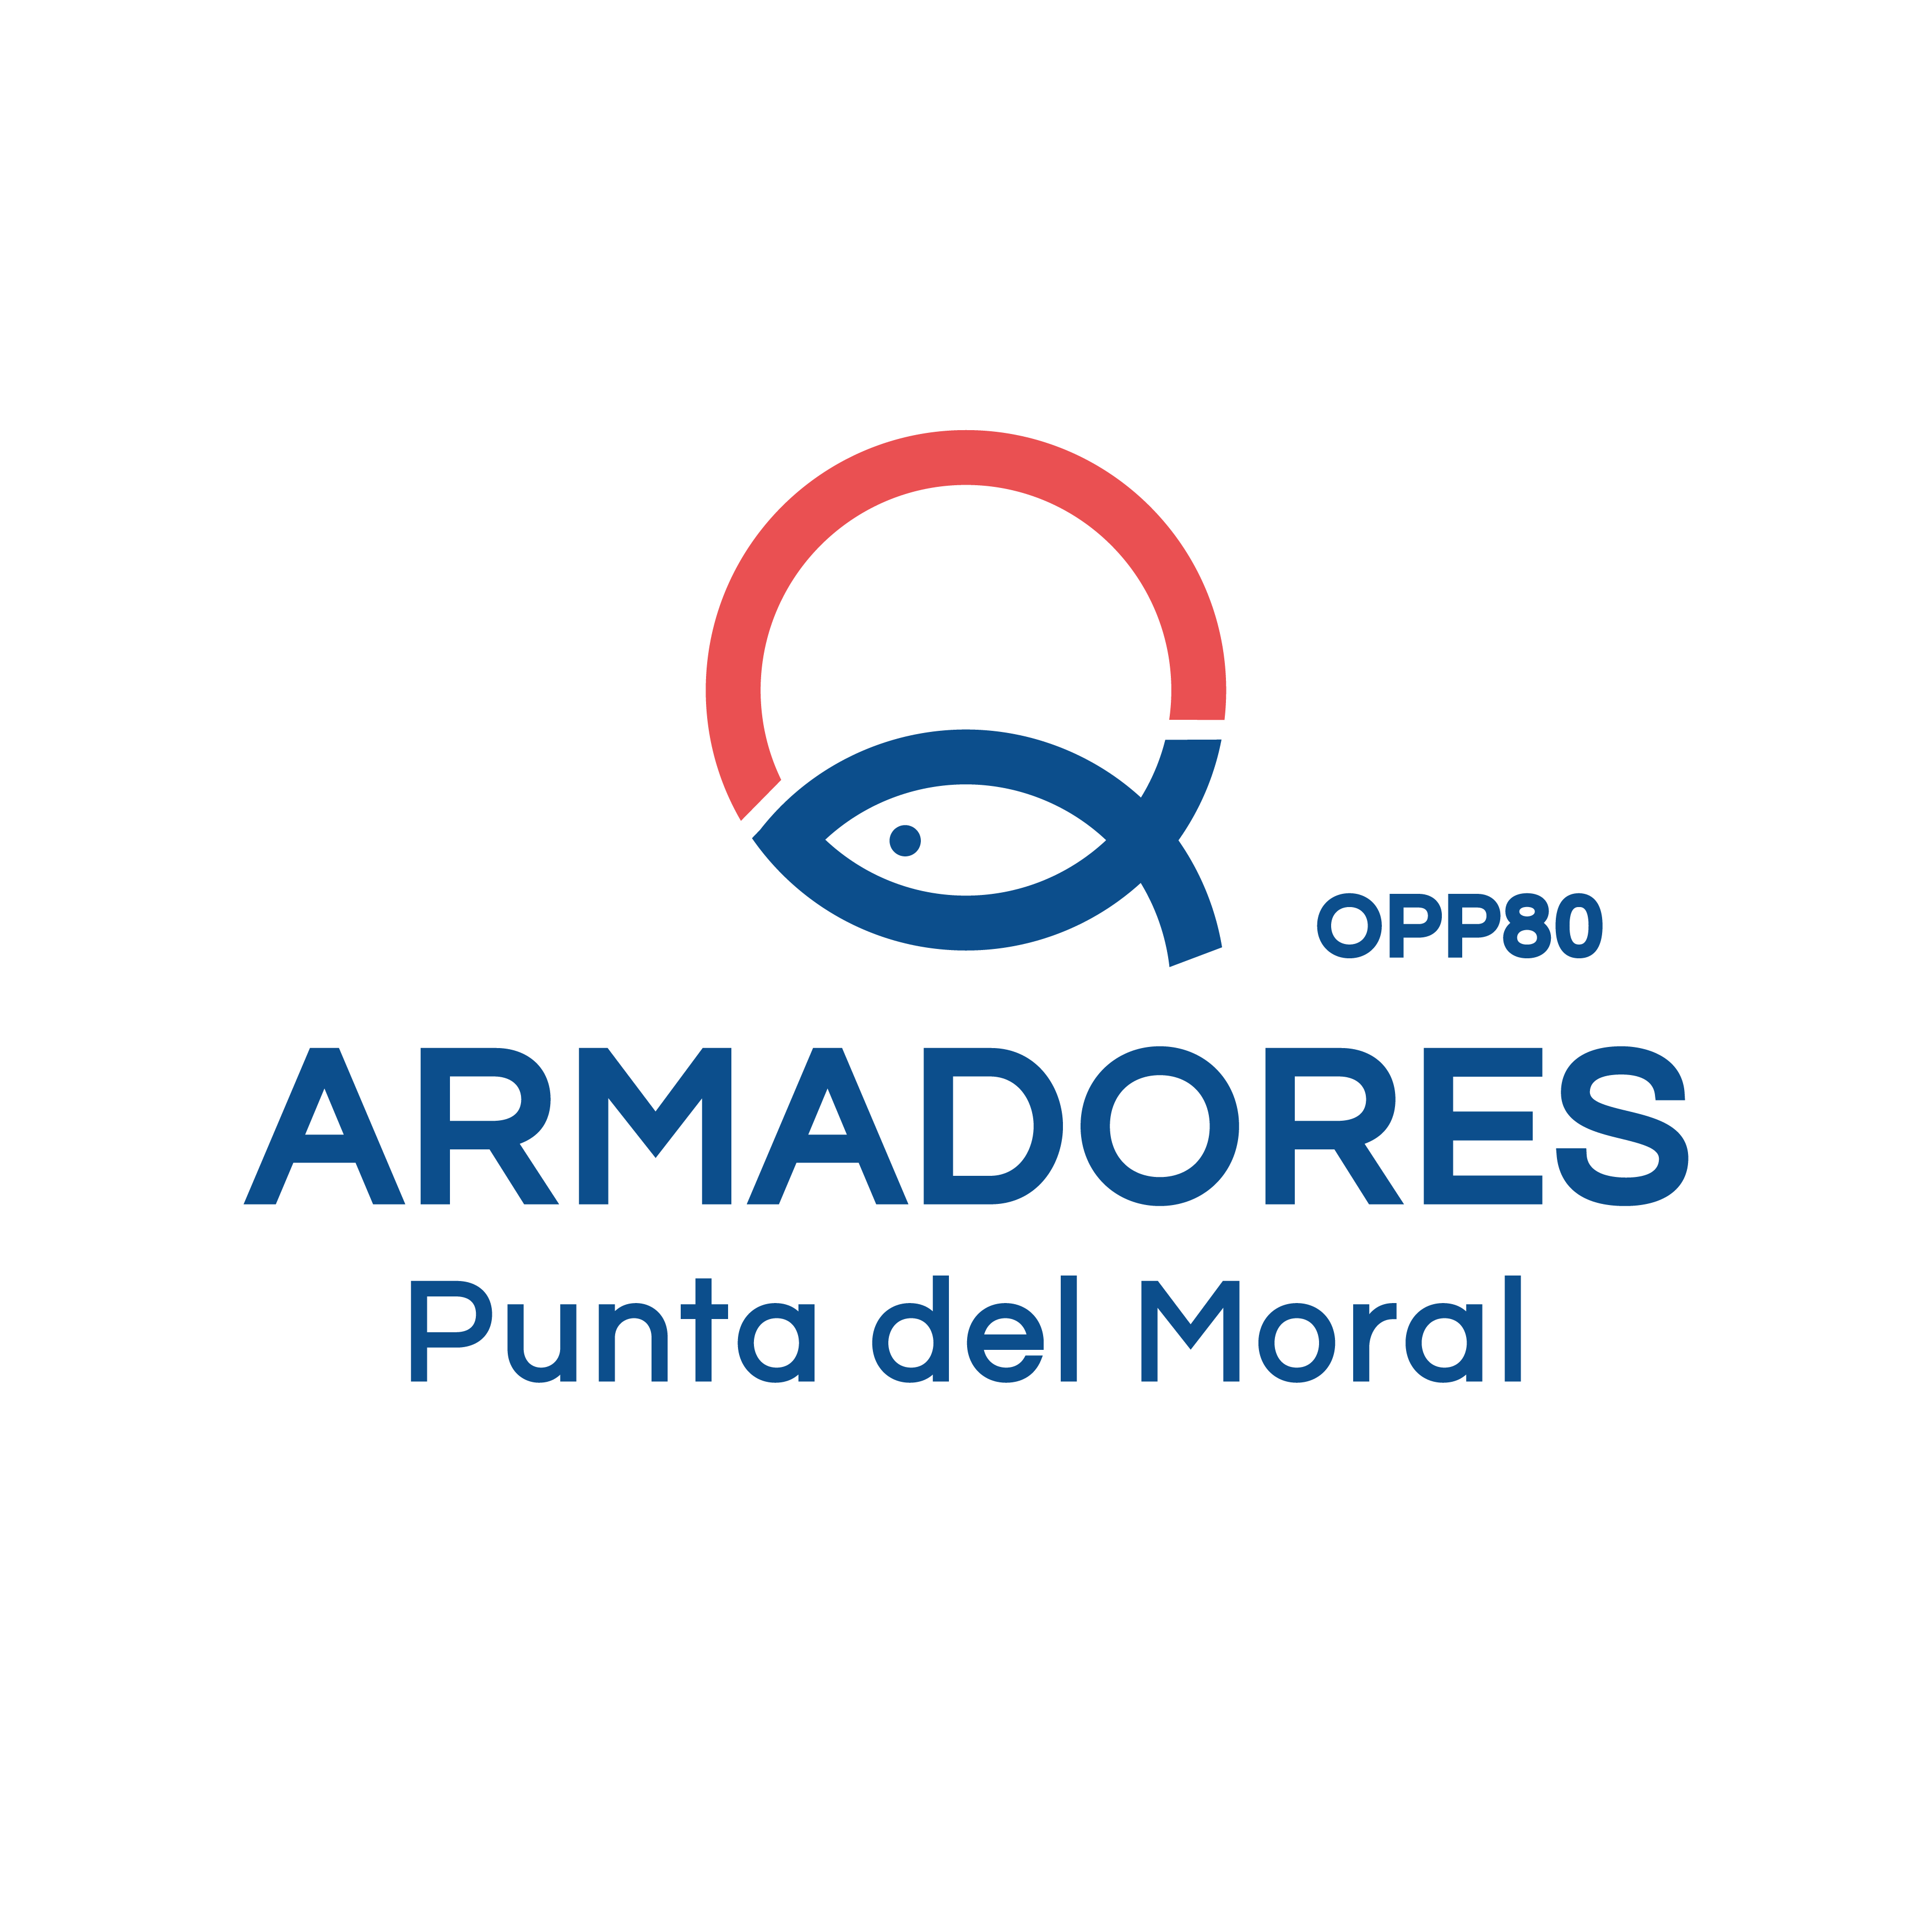 Asociación de Armadores Punta del Moral Logo